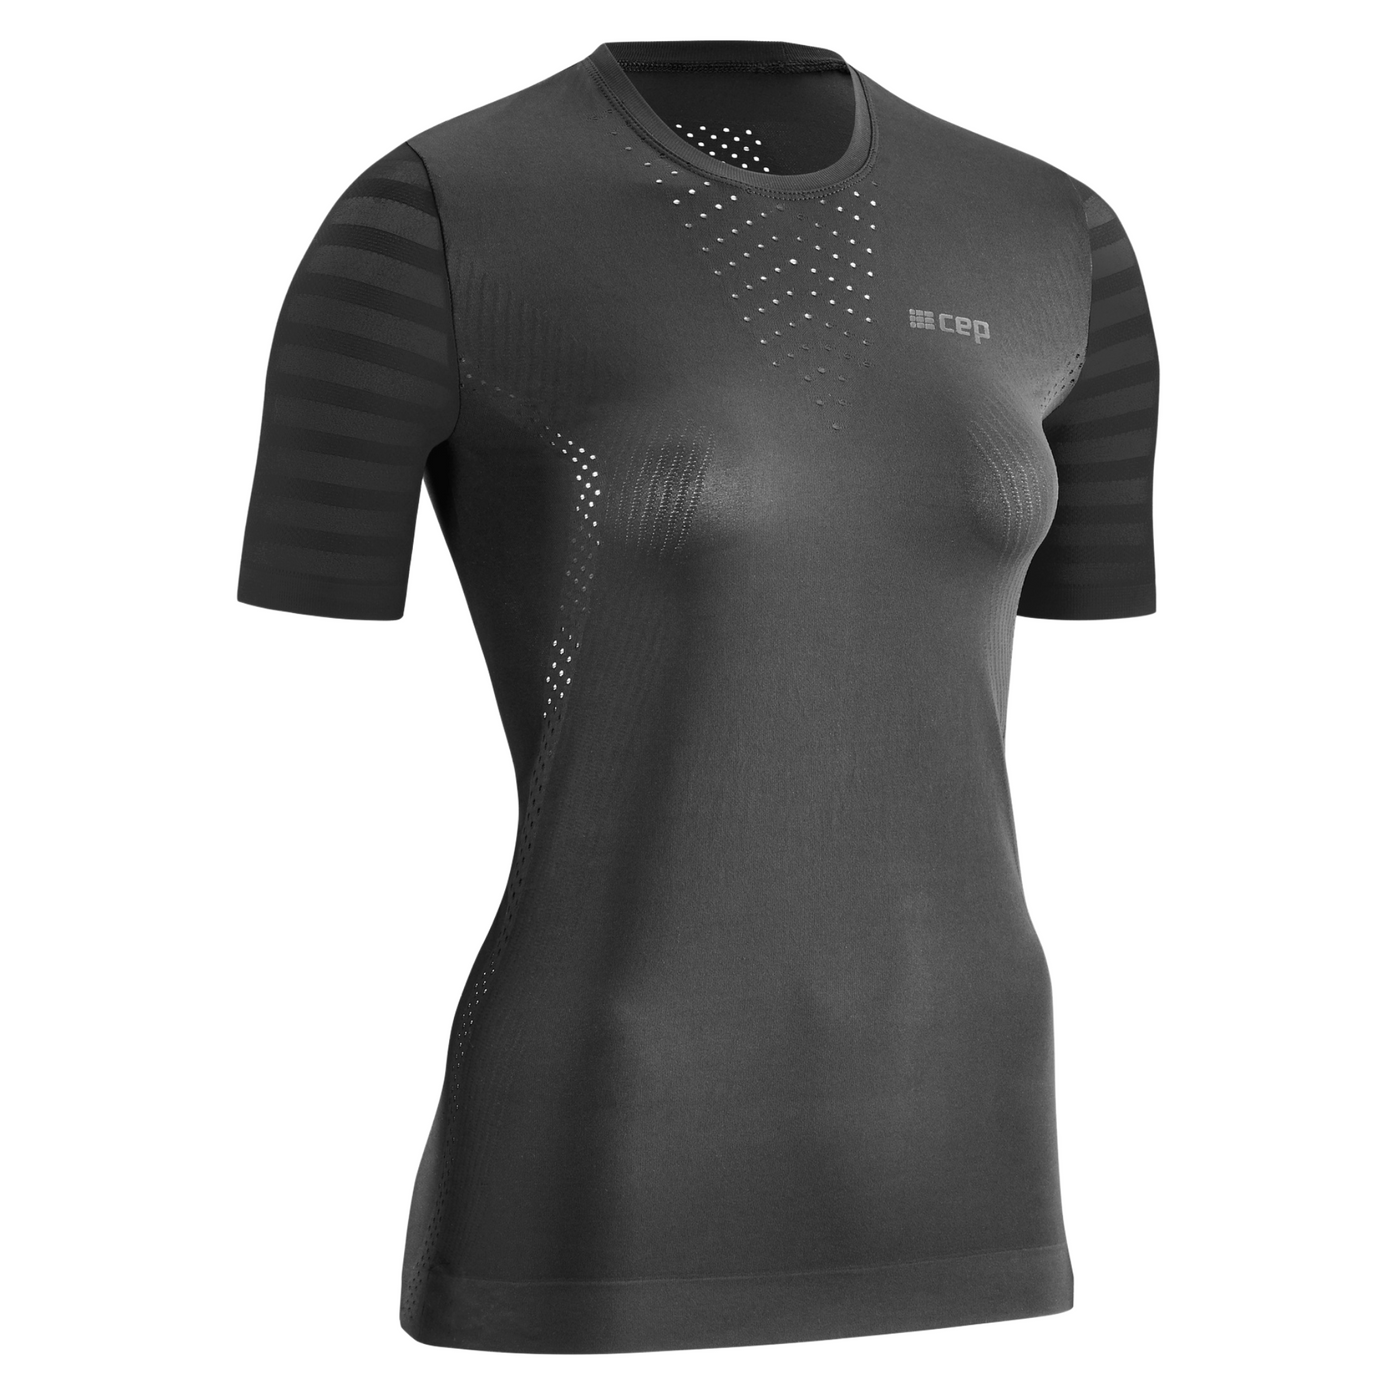 Ultralight Short Sleeve Shirt, Women, Black, Front View